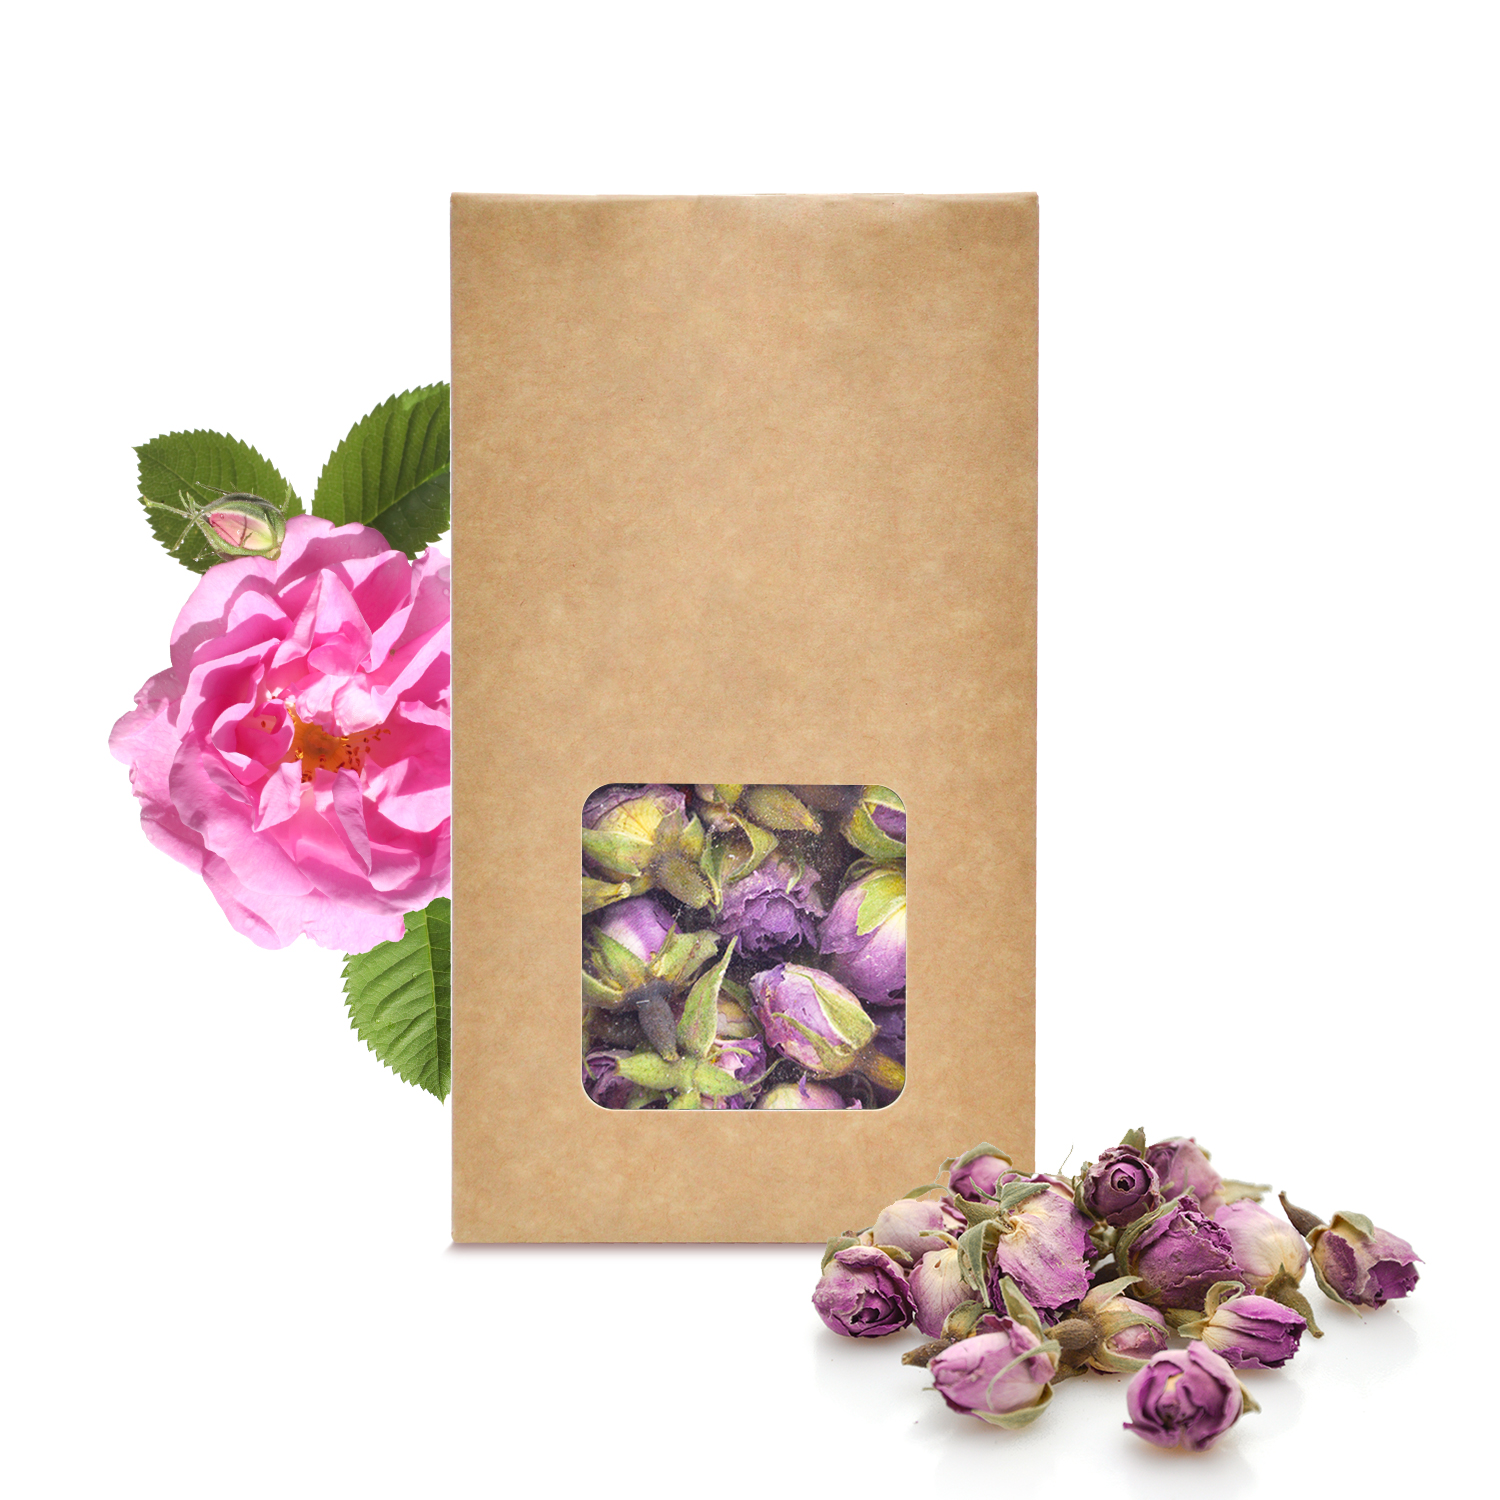 Fleur d'hibiscus séchée pour infusion et tisane : découvrez ses bienfaits